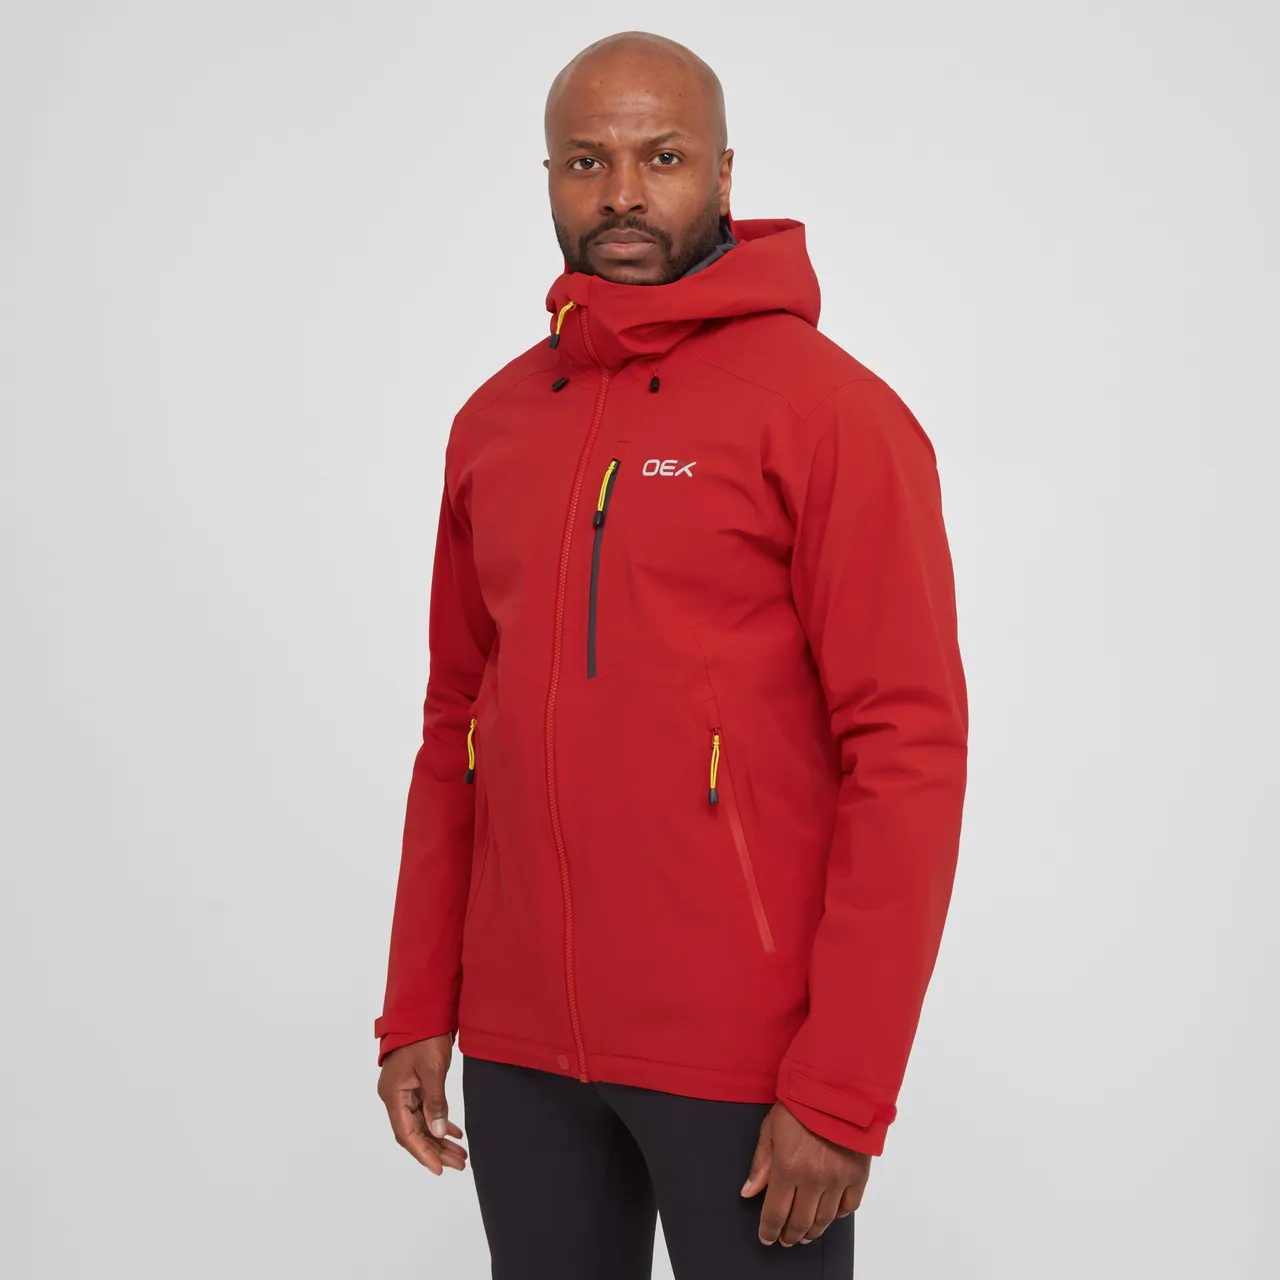 Men's Aonach II Waterproof Jacket, Red